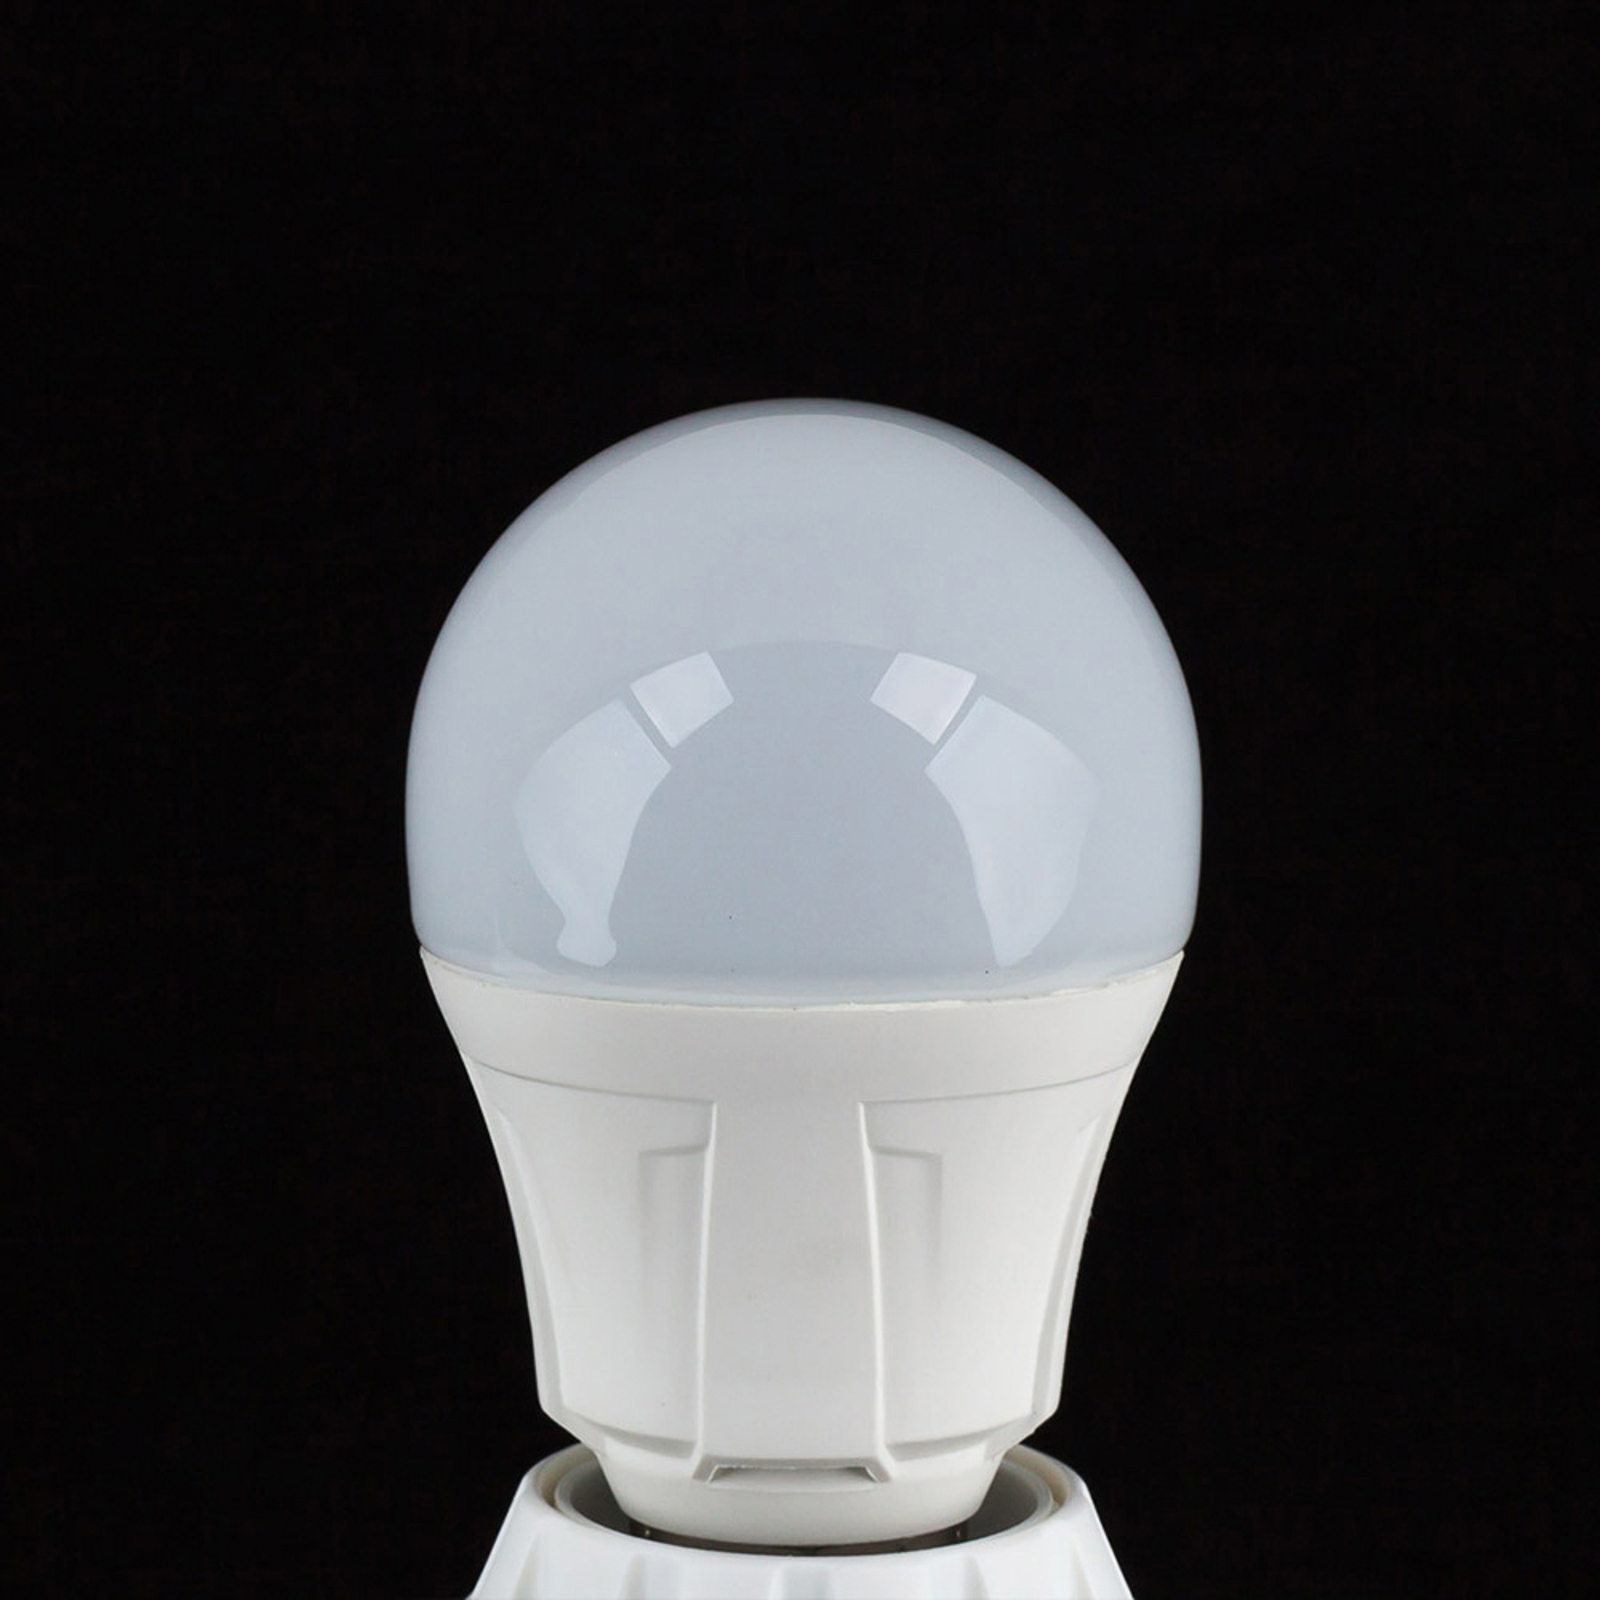 LED žarnica oblike E27 11W 830 komplet 6 kosov